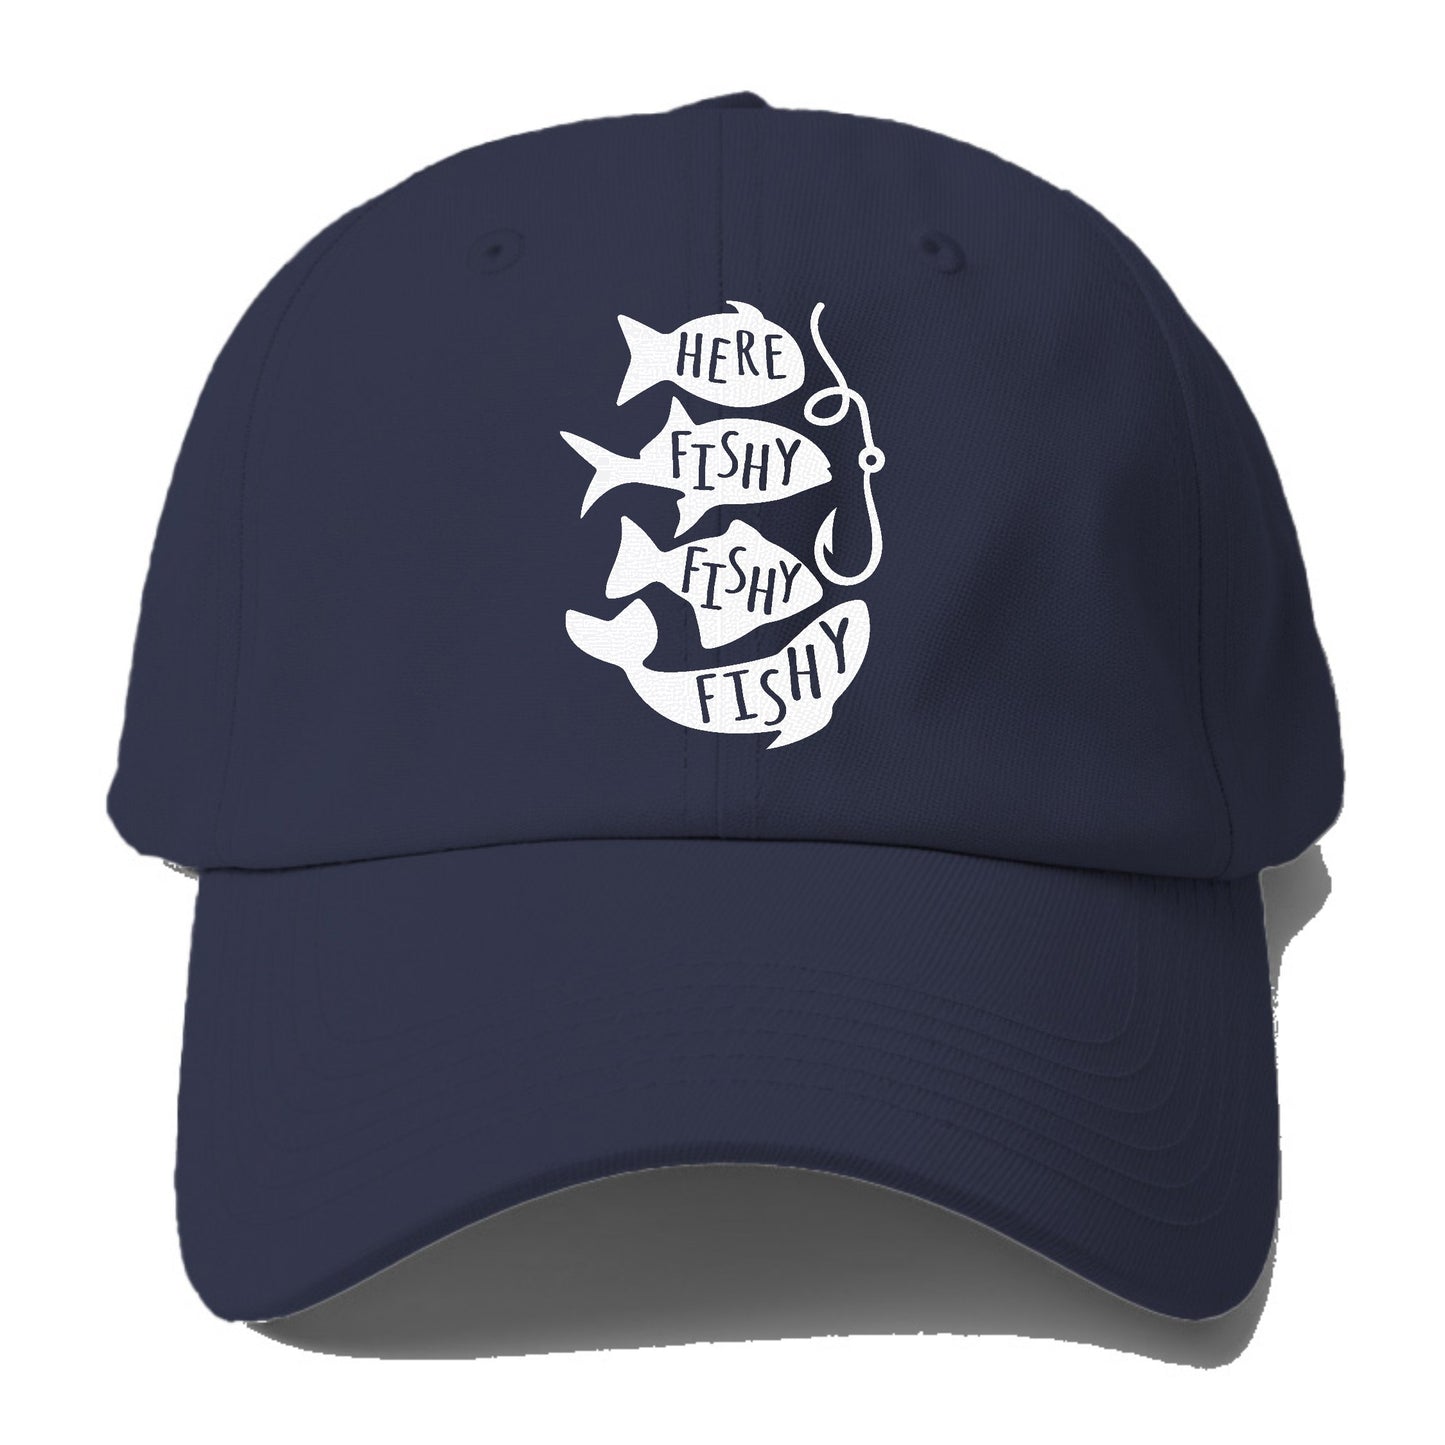 Here Fishy Fishy Fishy!! Hat